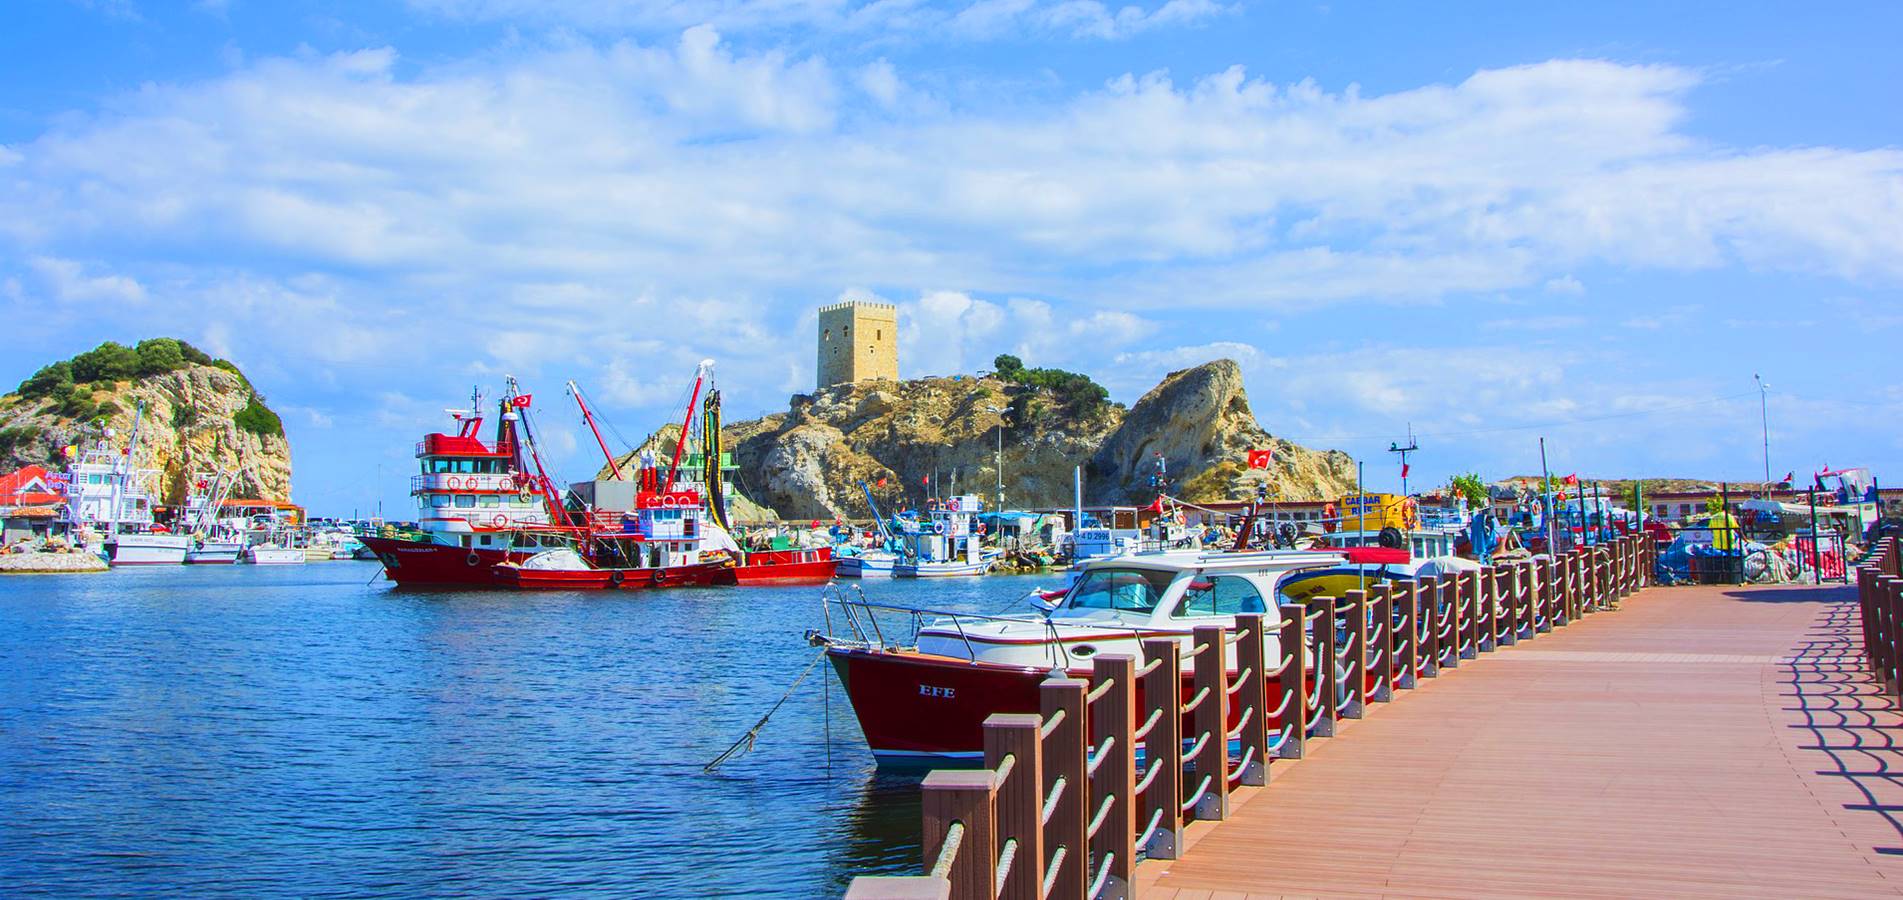 السياحة في تركيا 2021: شركة الكنانة للسياحة و السفر - رحلات يومية